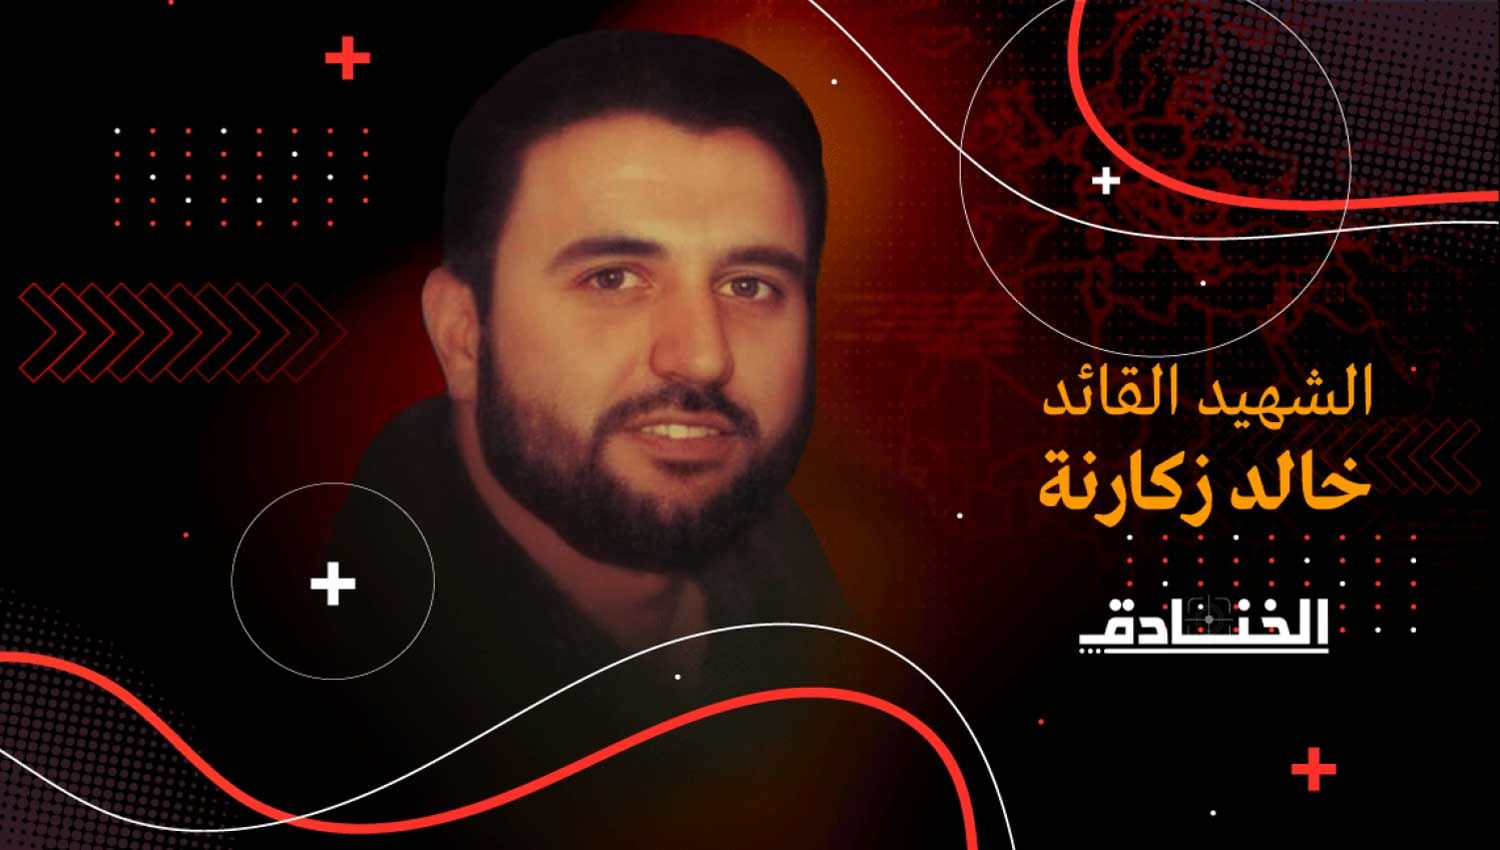 الشهيد خالد زكارنة: مهندس عمليات السرايا من جنين الى الداخل المحتل